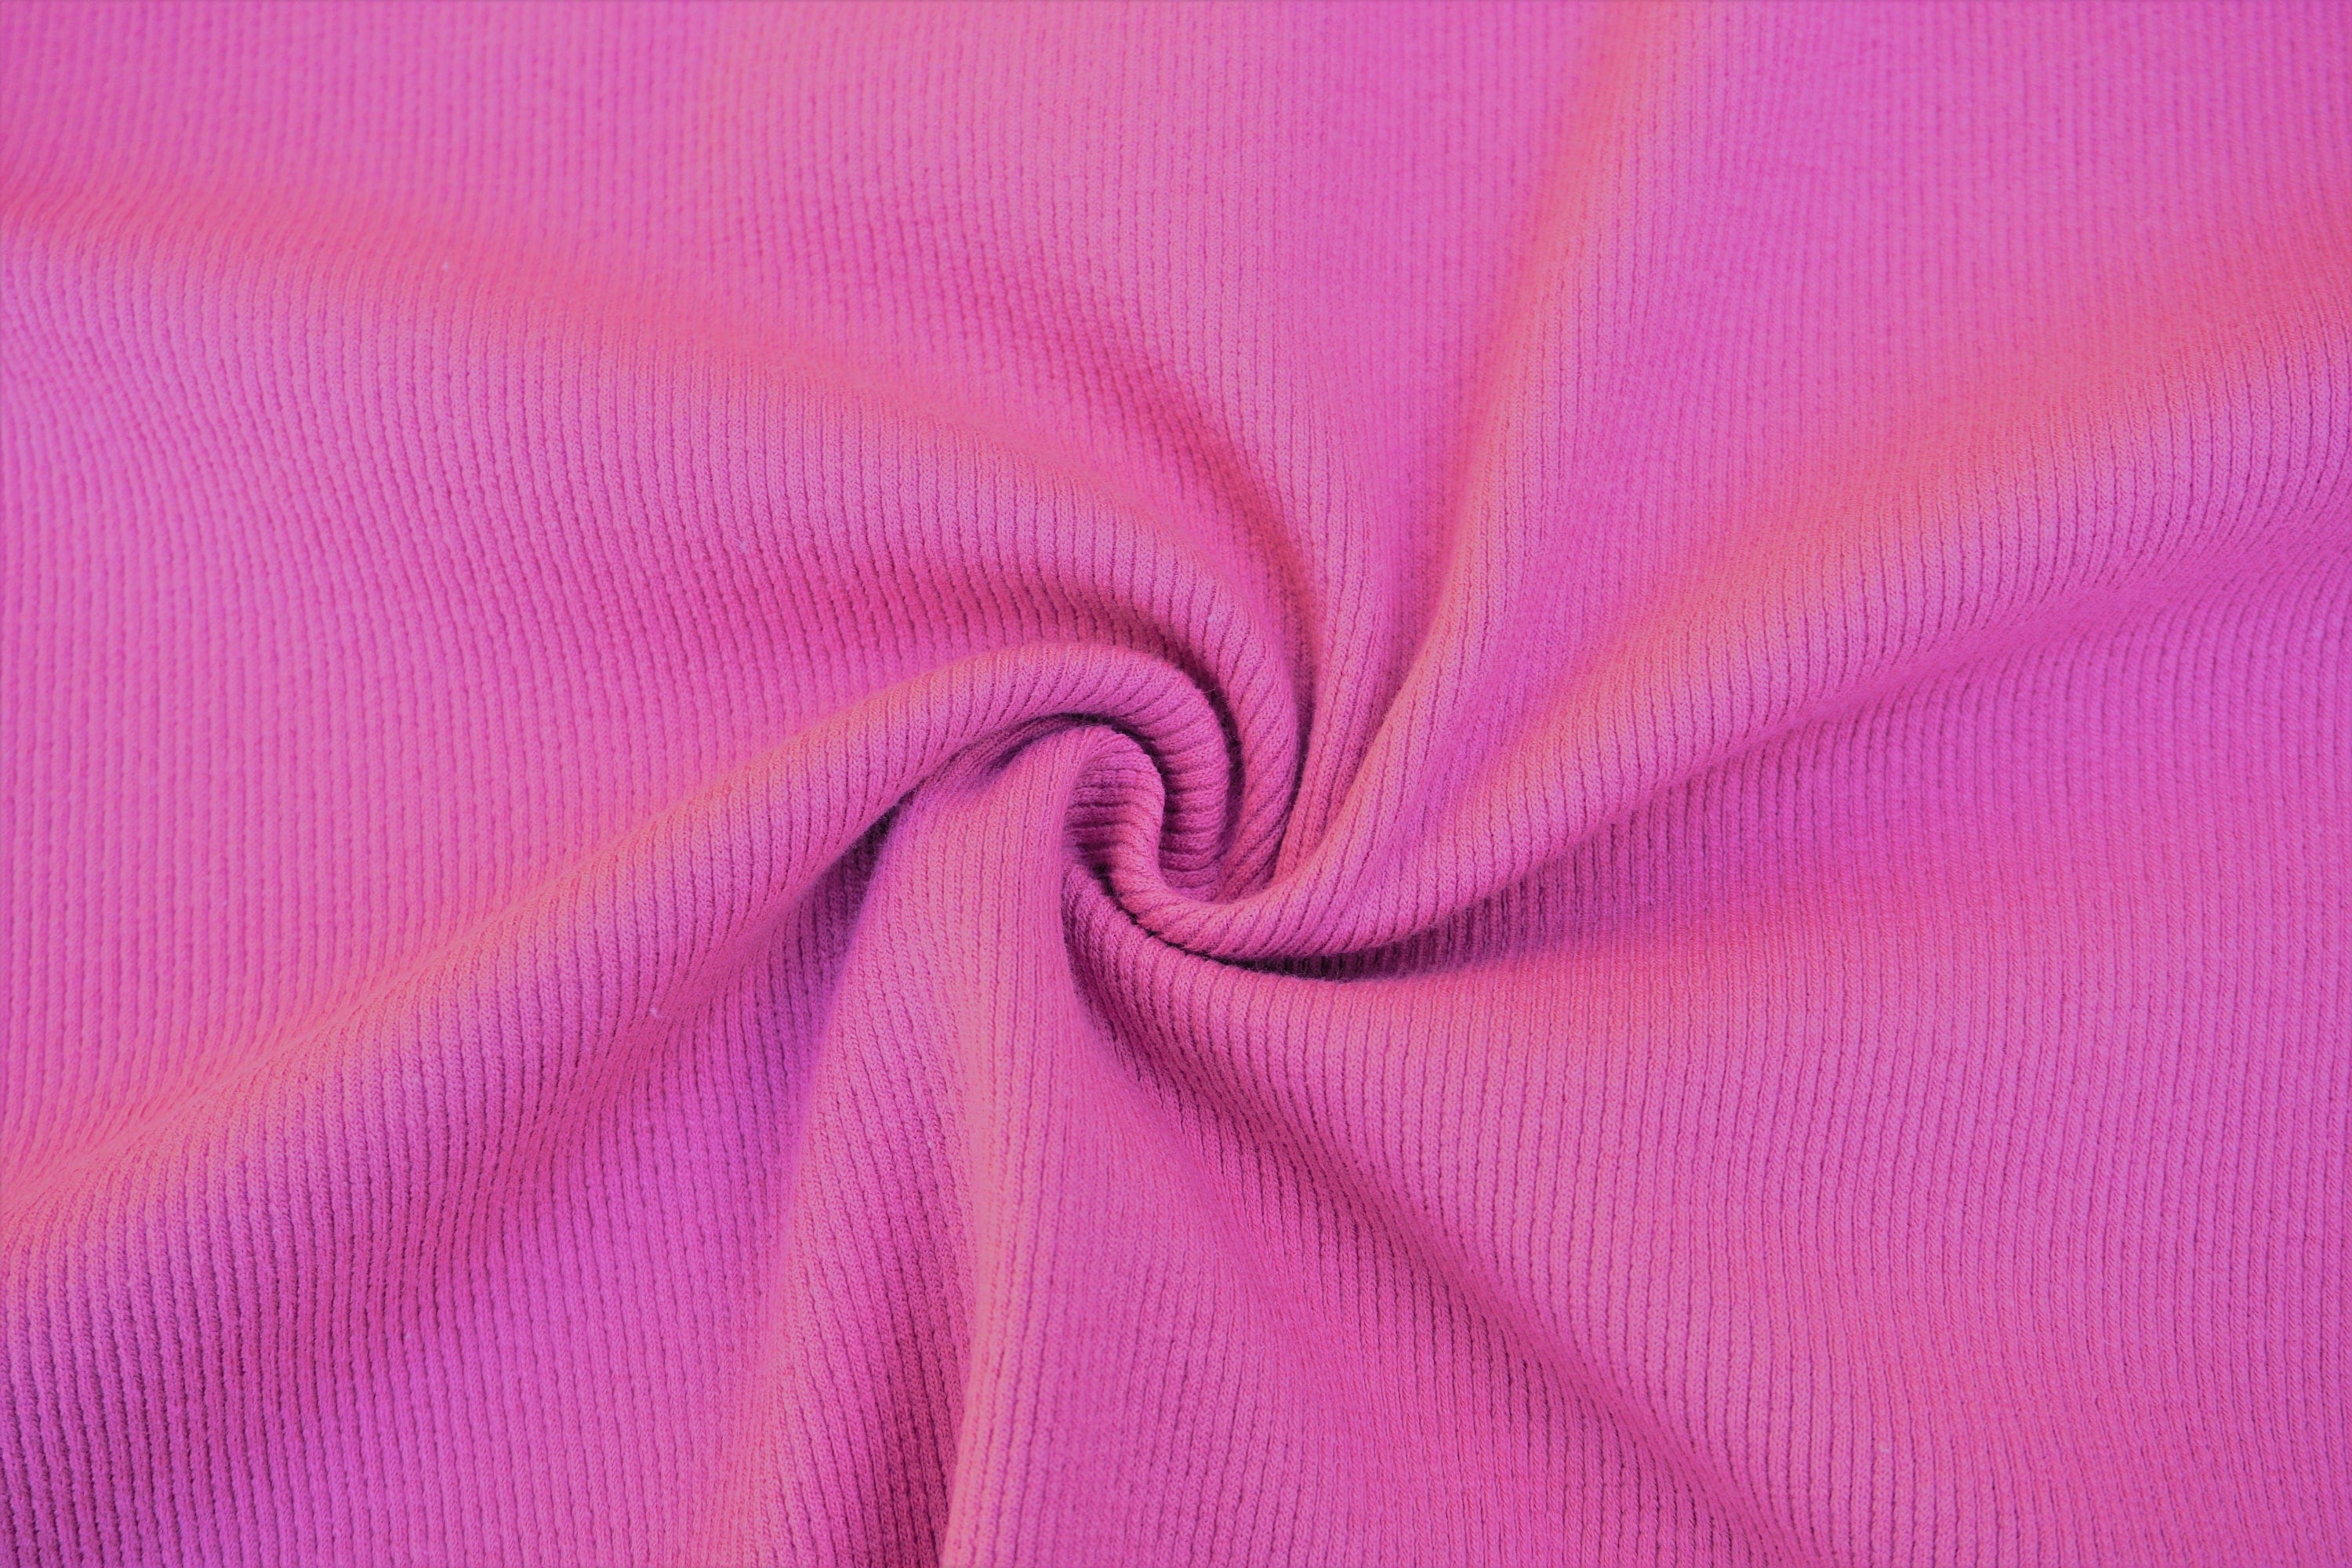 Hot Pink Cotton Rib Knit Fabric - 2x1